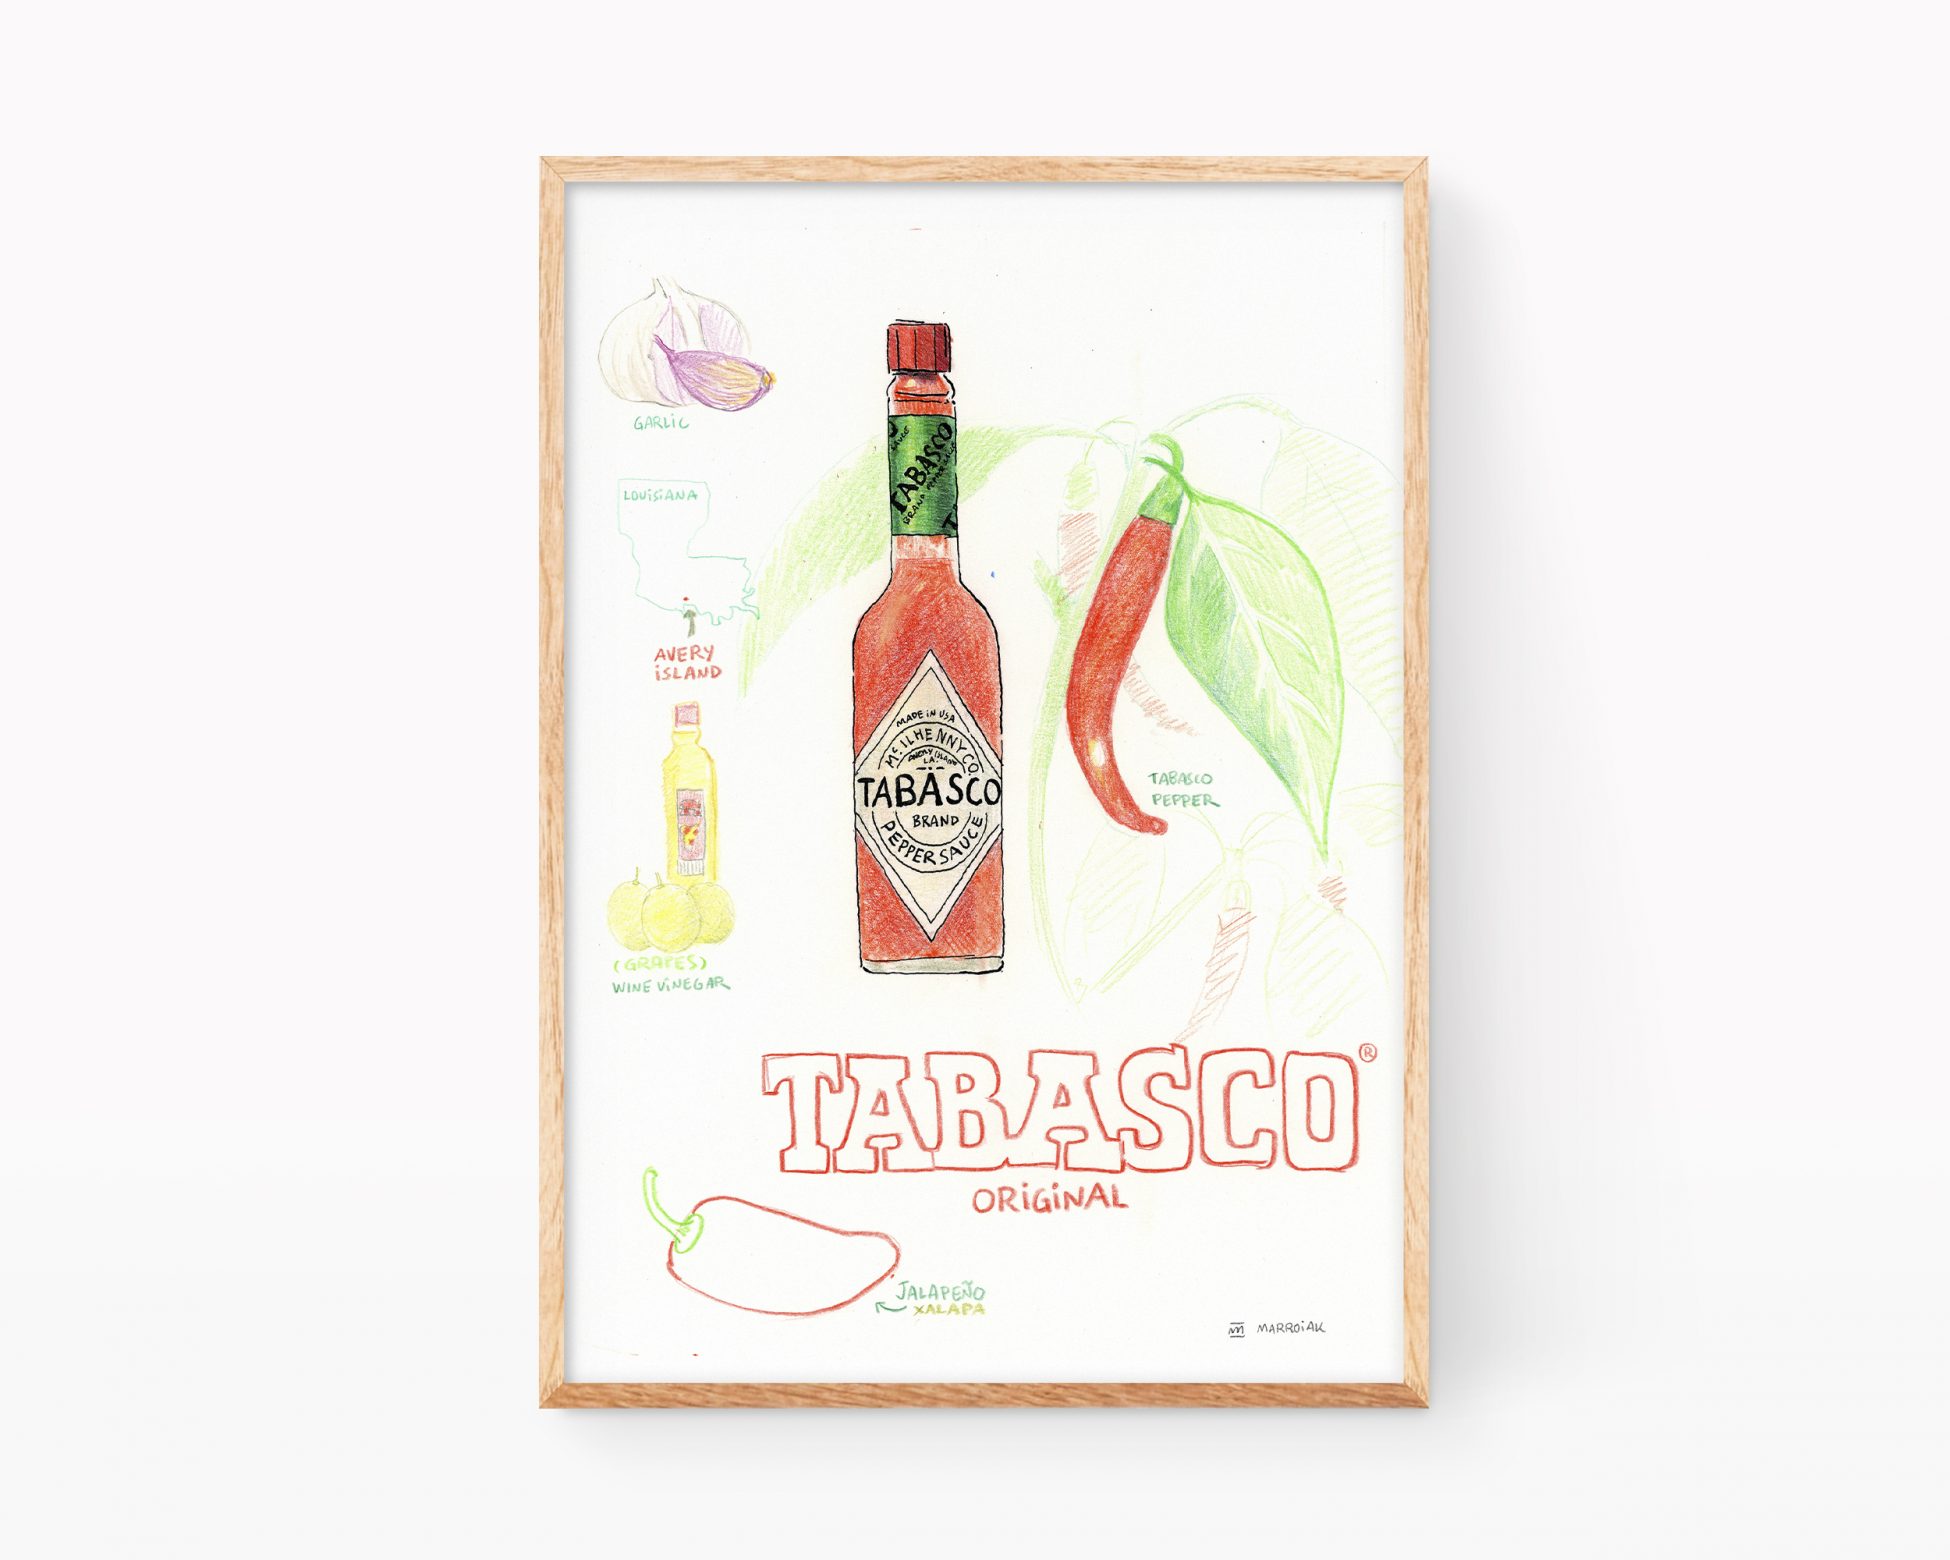 Cuadro para enmarcar para cocina con una ilustración en acuarela de una botella de tabasco Americano. Comida mexicana en acuarela sobre papel. Impresión digital